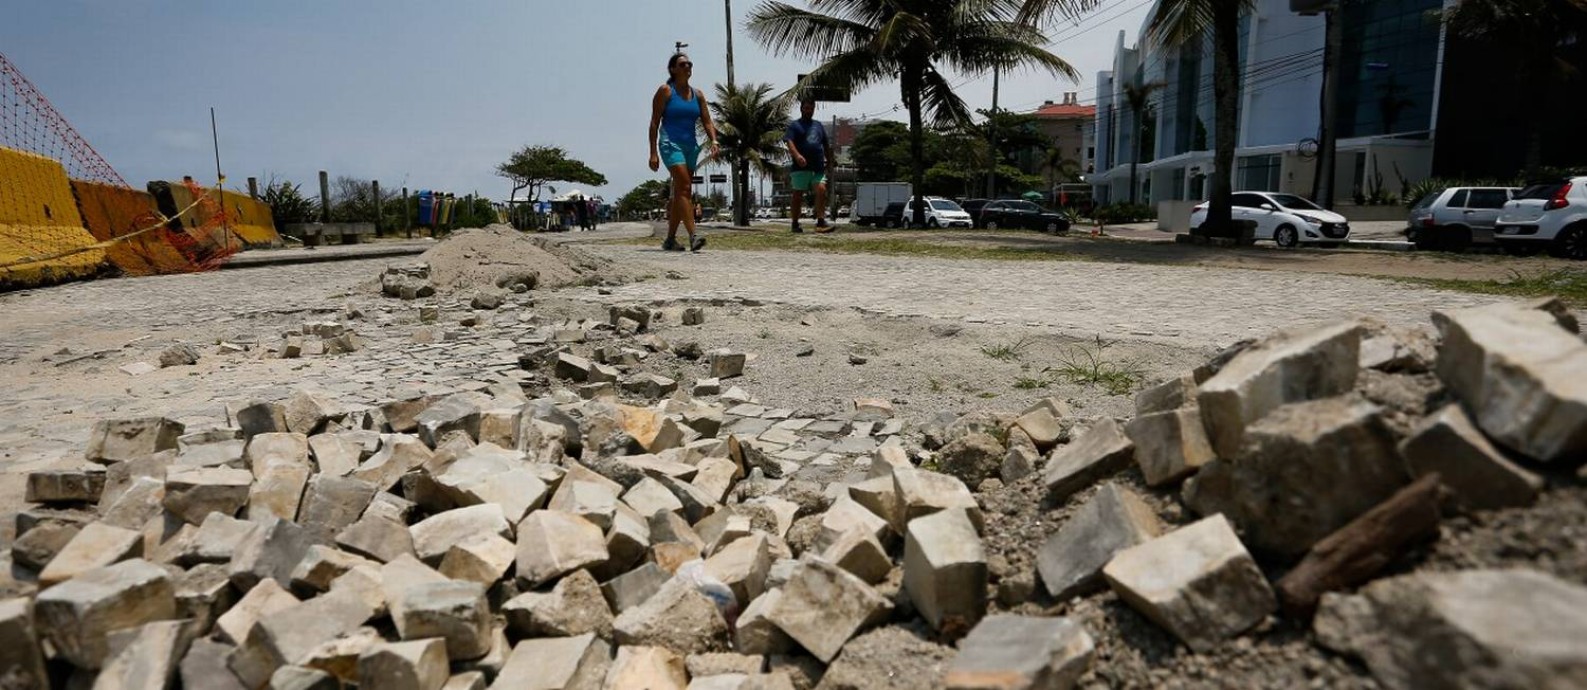 Moradores reclamam dos buracos e acidentes no calçadão da Barra da Tijuca Foto: Pablo Jacob / Agência O Globo